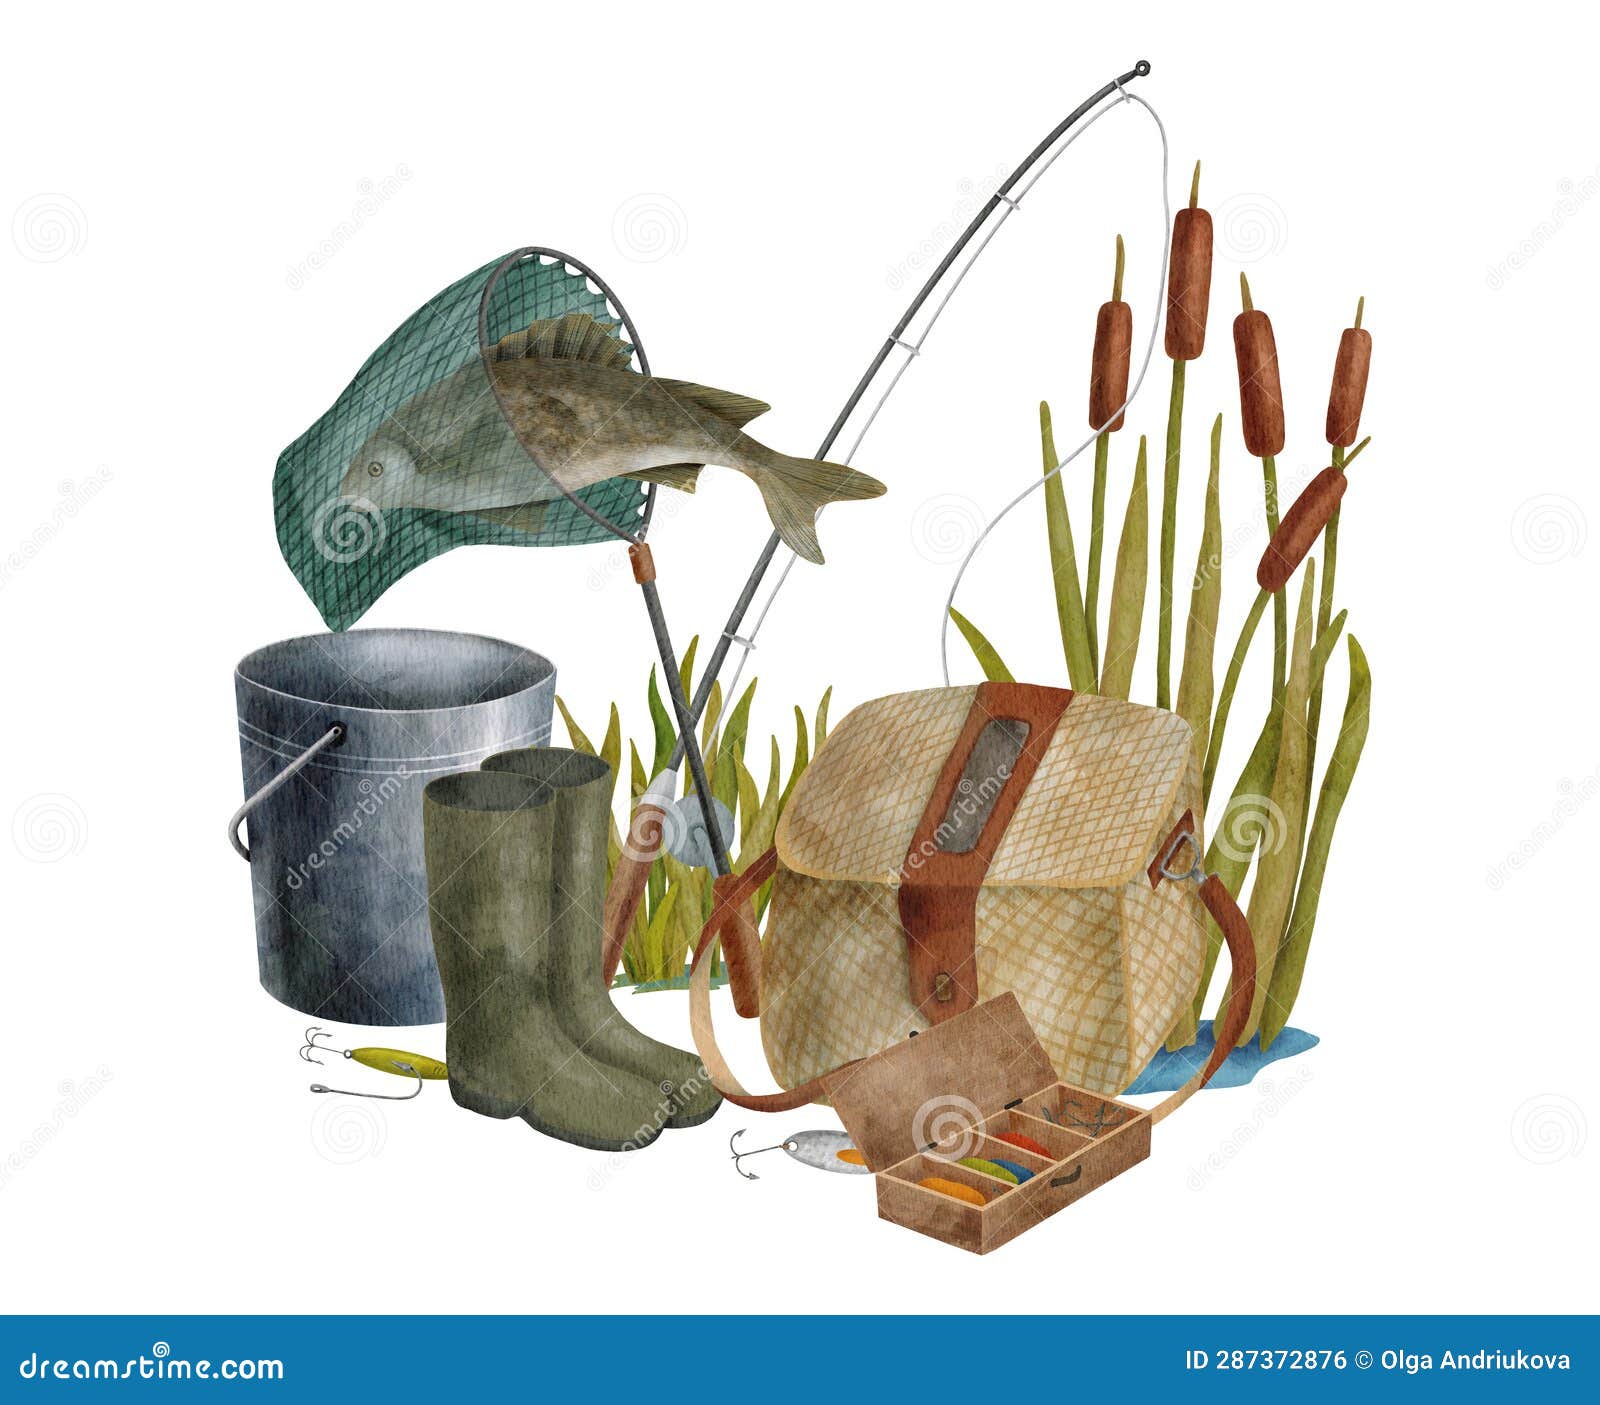 Fishing Creel Stock Illustrations – 30 Fishing Creel Stock